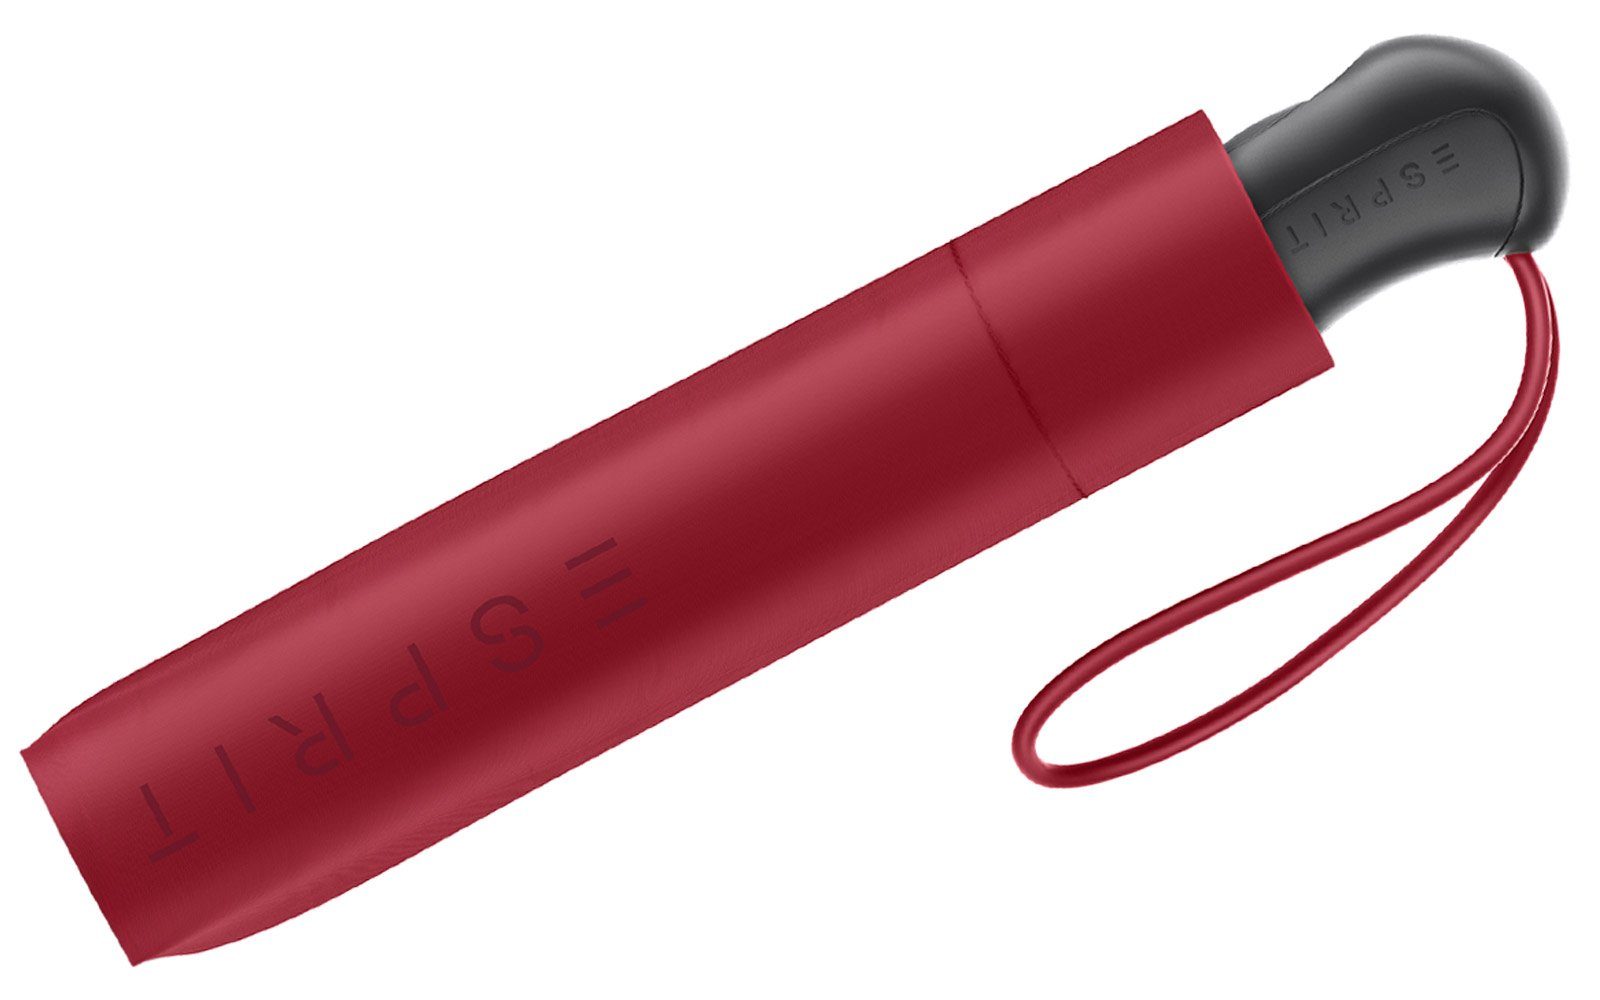 praktisch rot stabil Easymatic und Light Taschenregenschirm Auf-Zu mit Automatik, Esprit Schirm